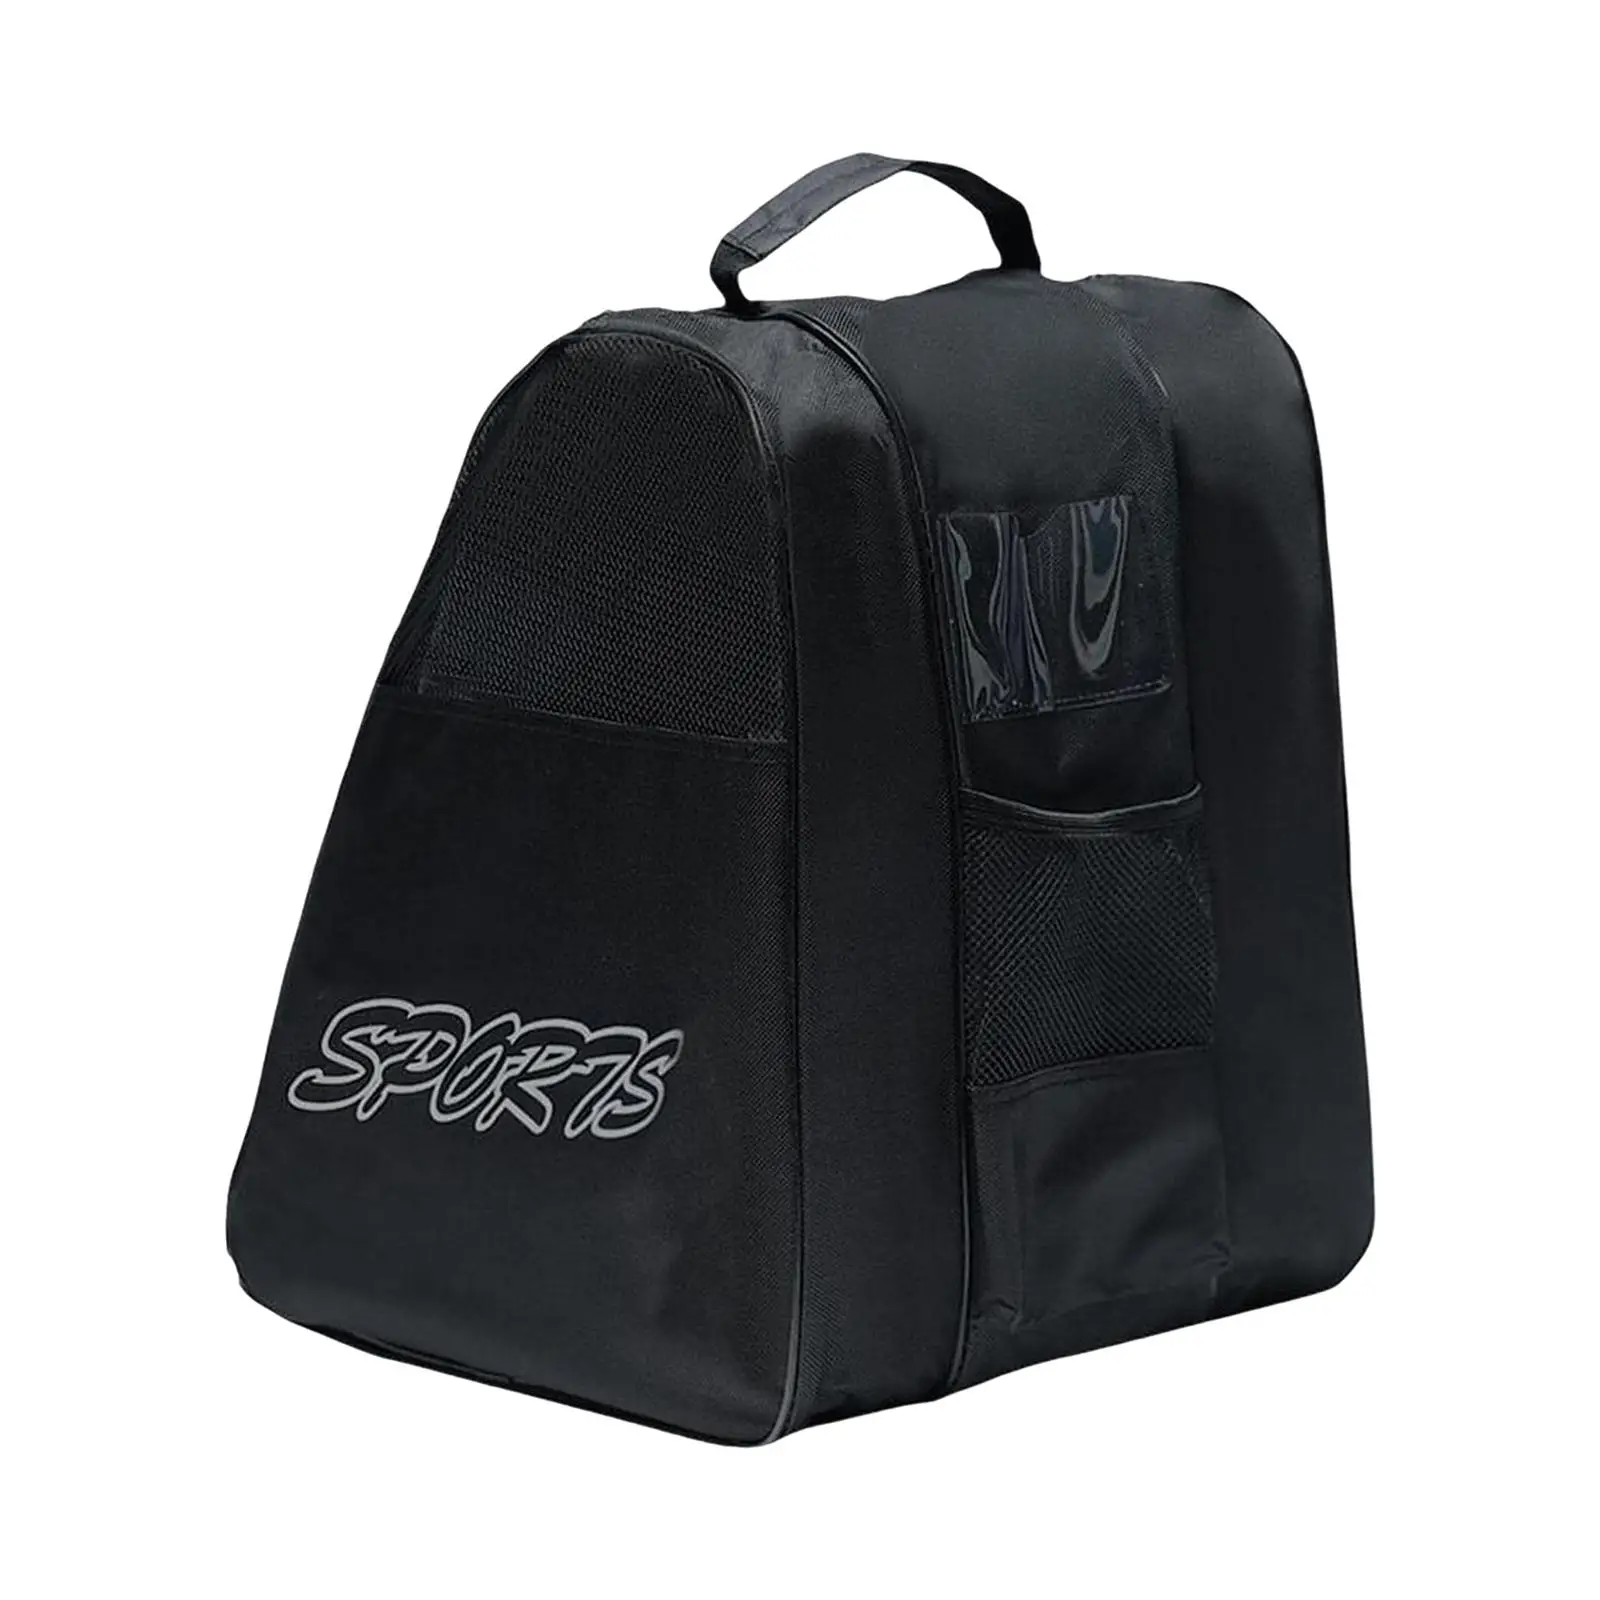 Roller Skate Bag Large Capacity Adjustable Shoulder Strap Lightweight Skating Shoes Carrying Bag for Quad Skates Figure Skates